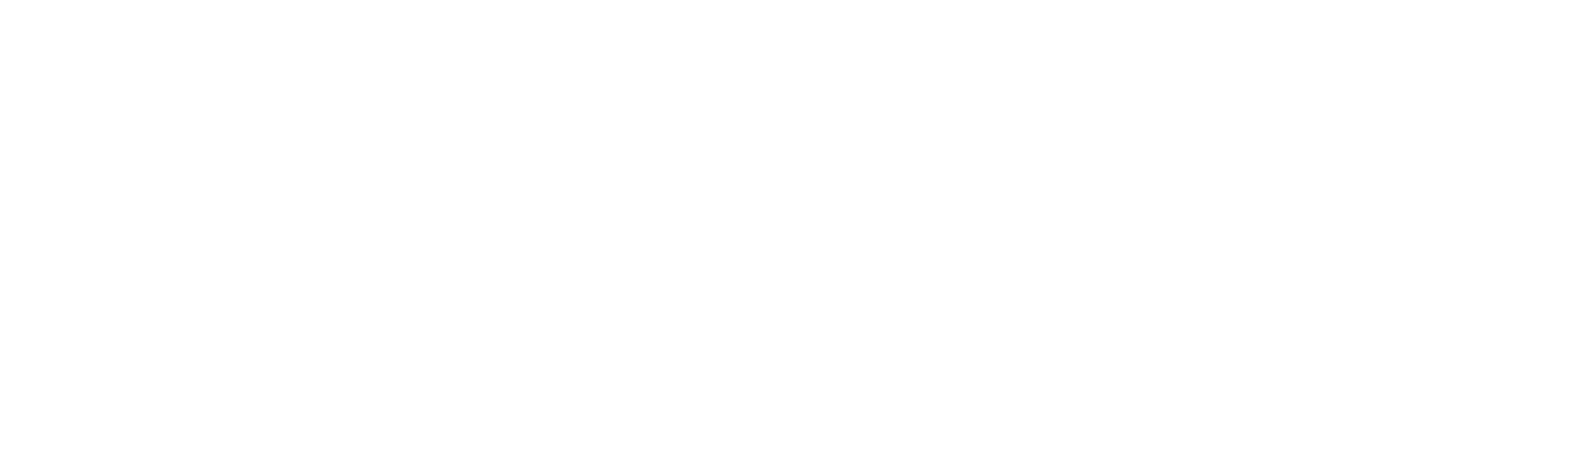 OHB SE logo grand pour les fonds sombres (PNG transparent)